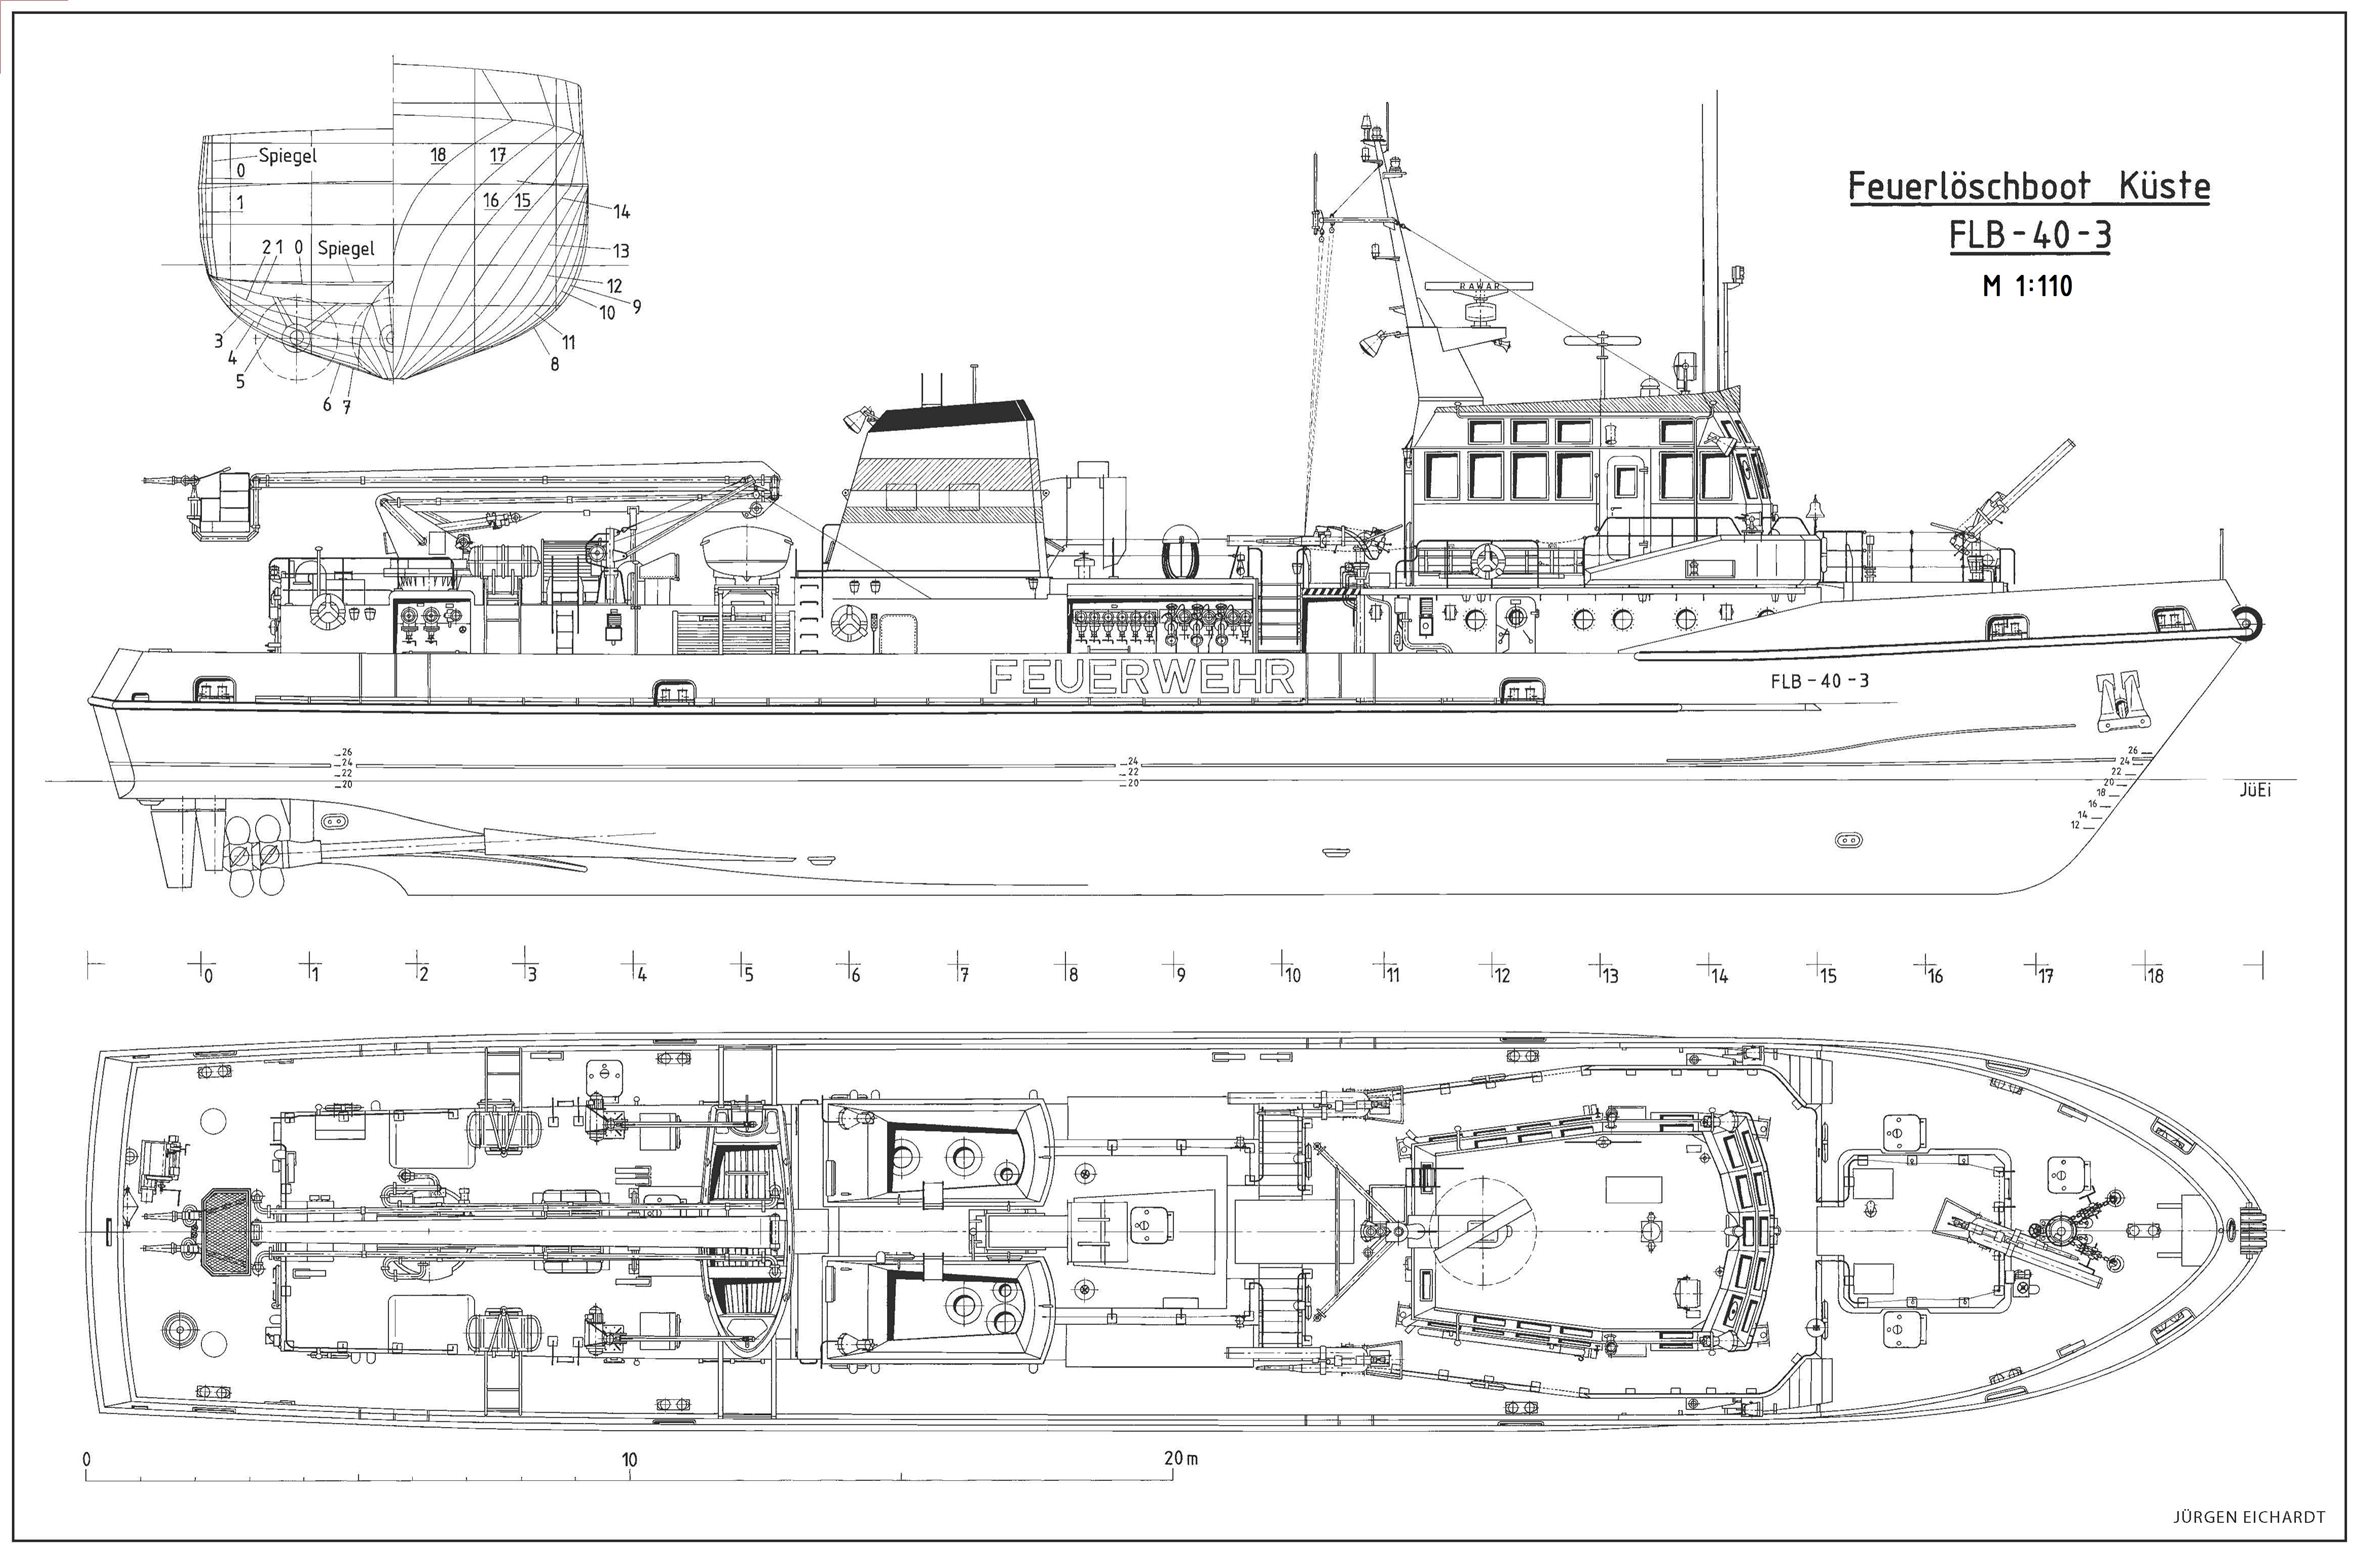 Чертежи торпедного катера для моделирования